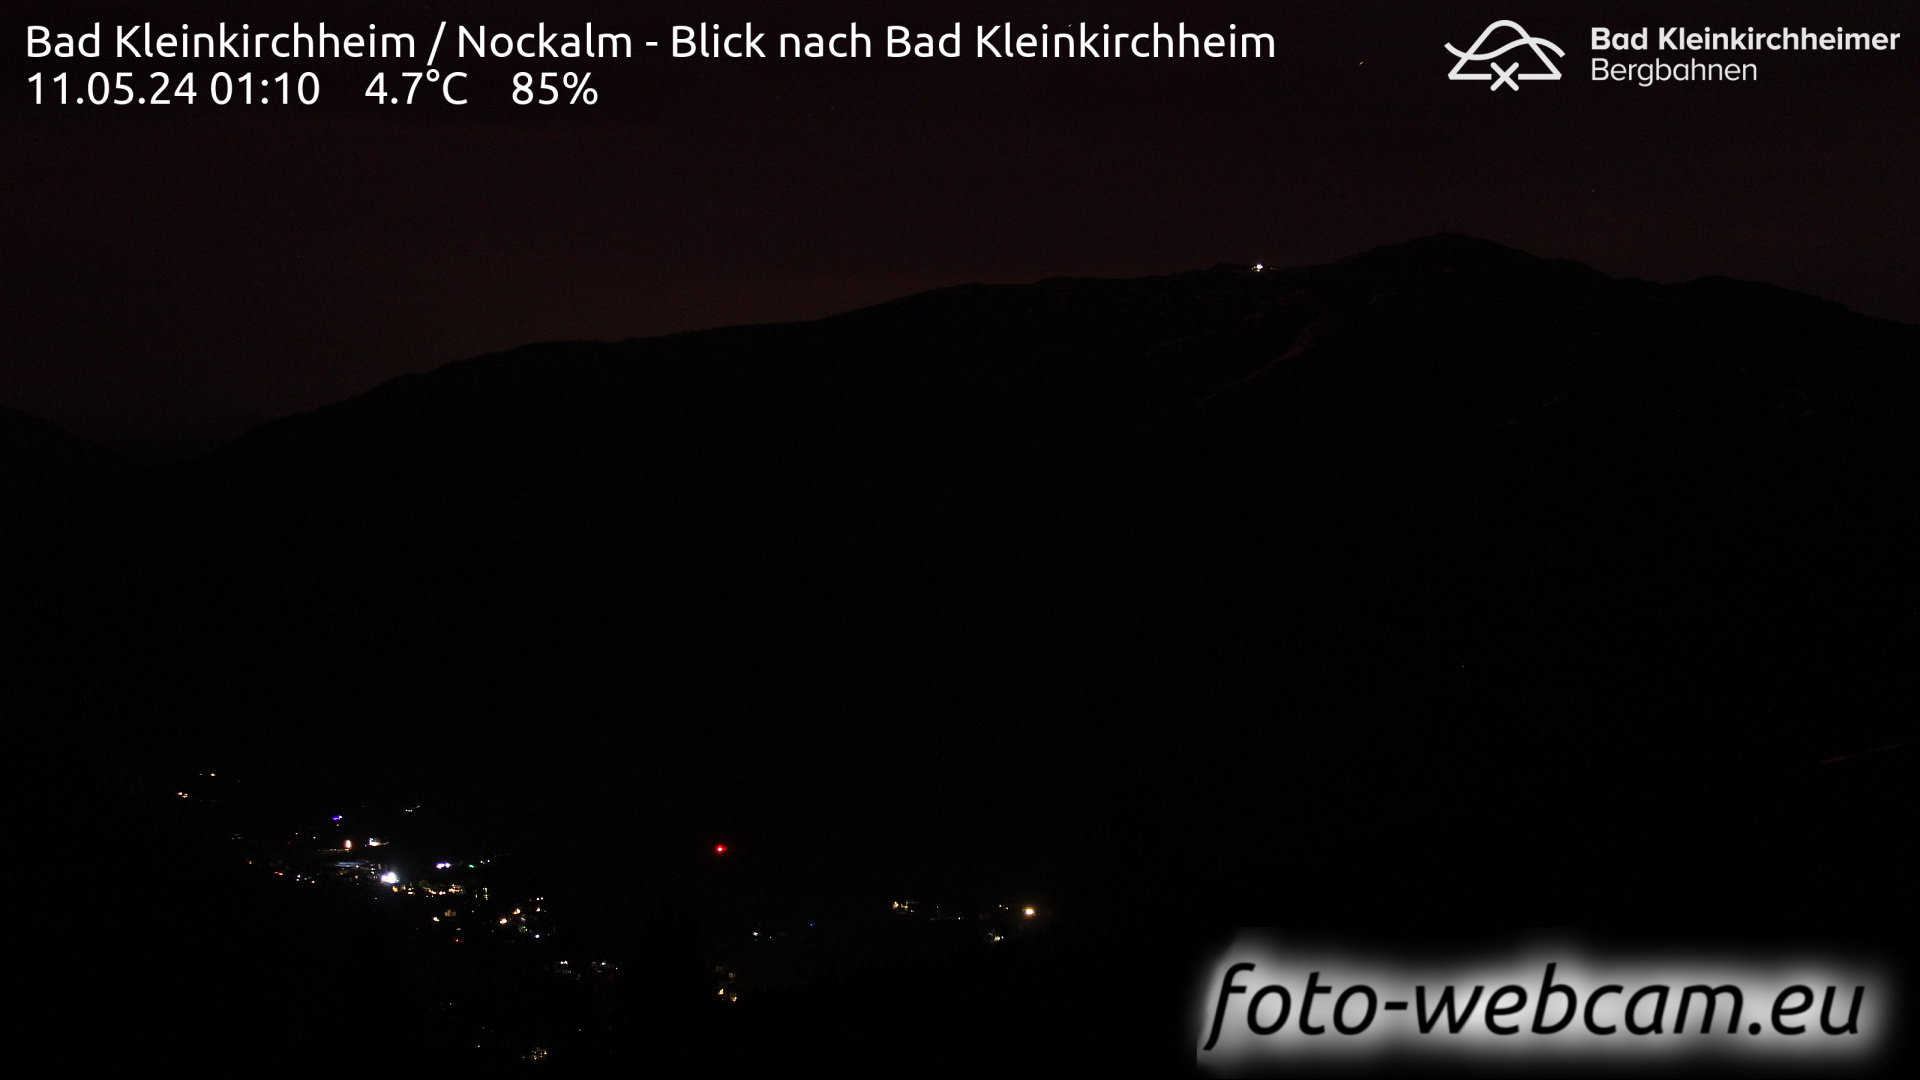 Bad Kleinkirchheim Man. 01:17